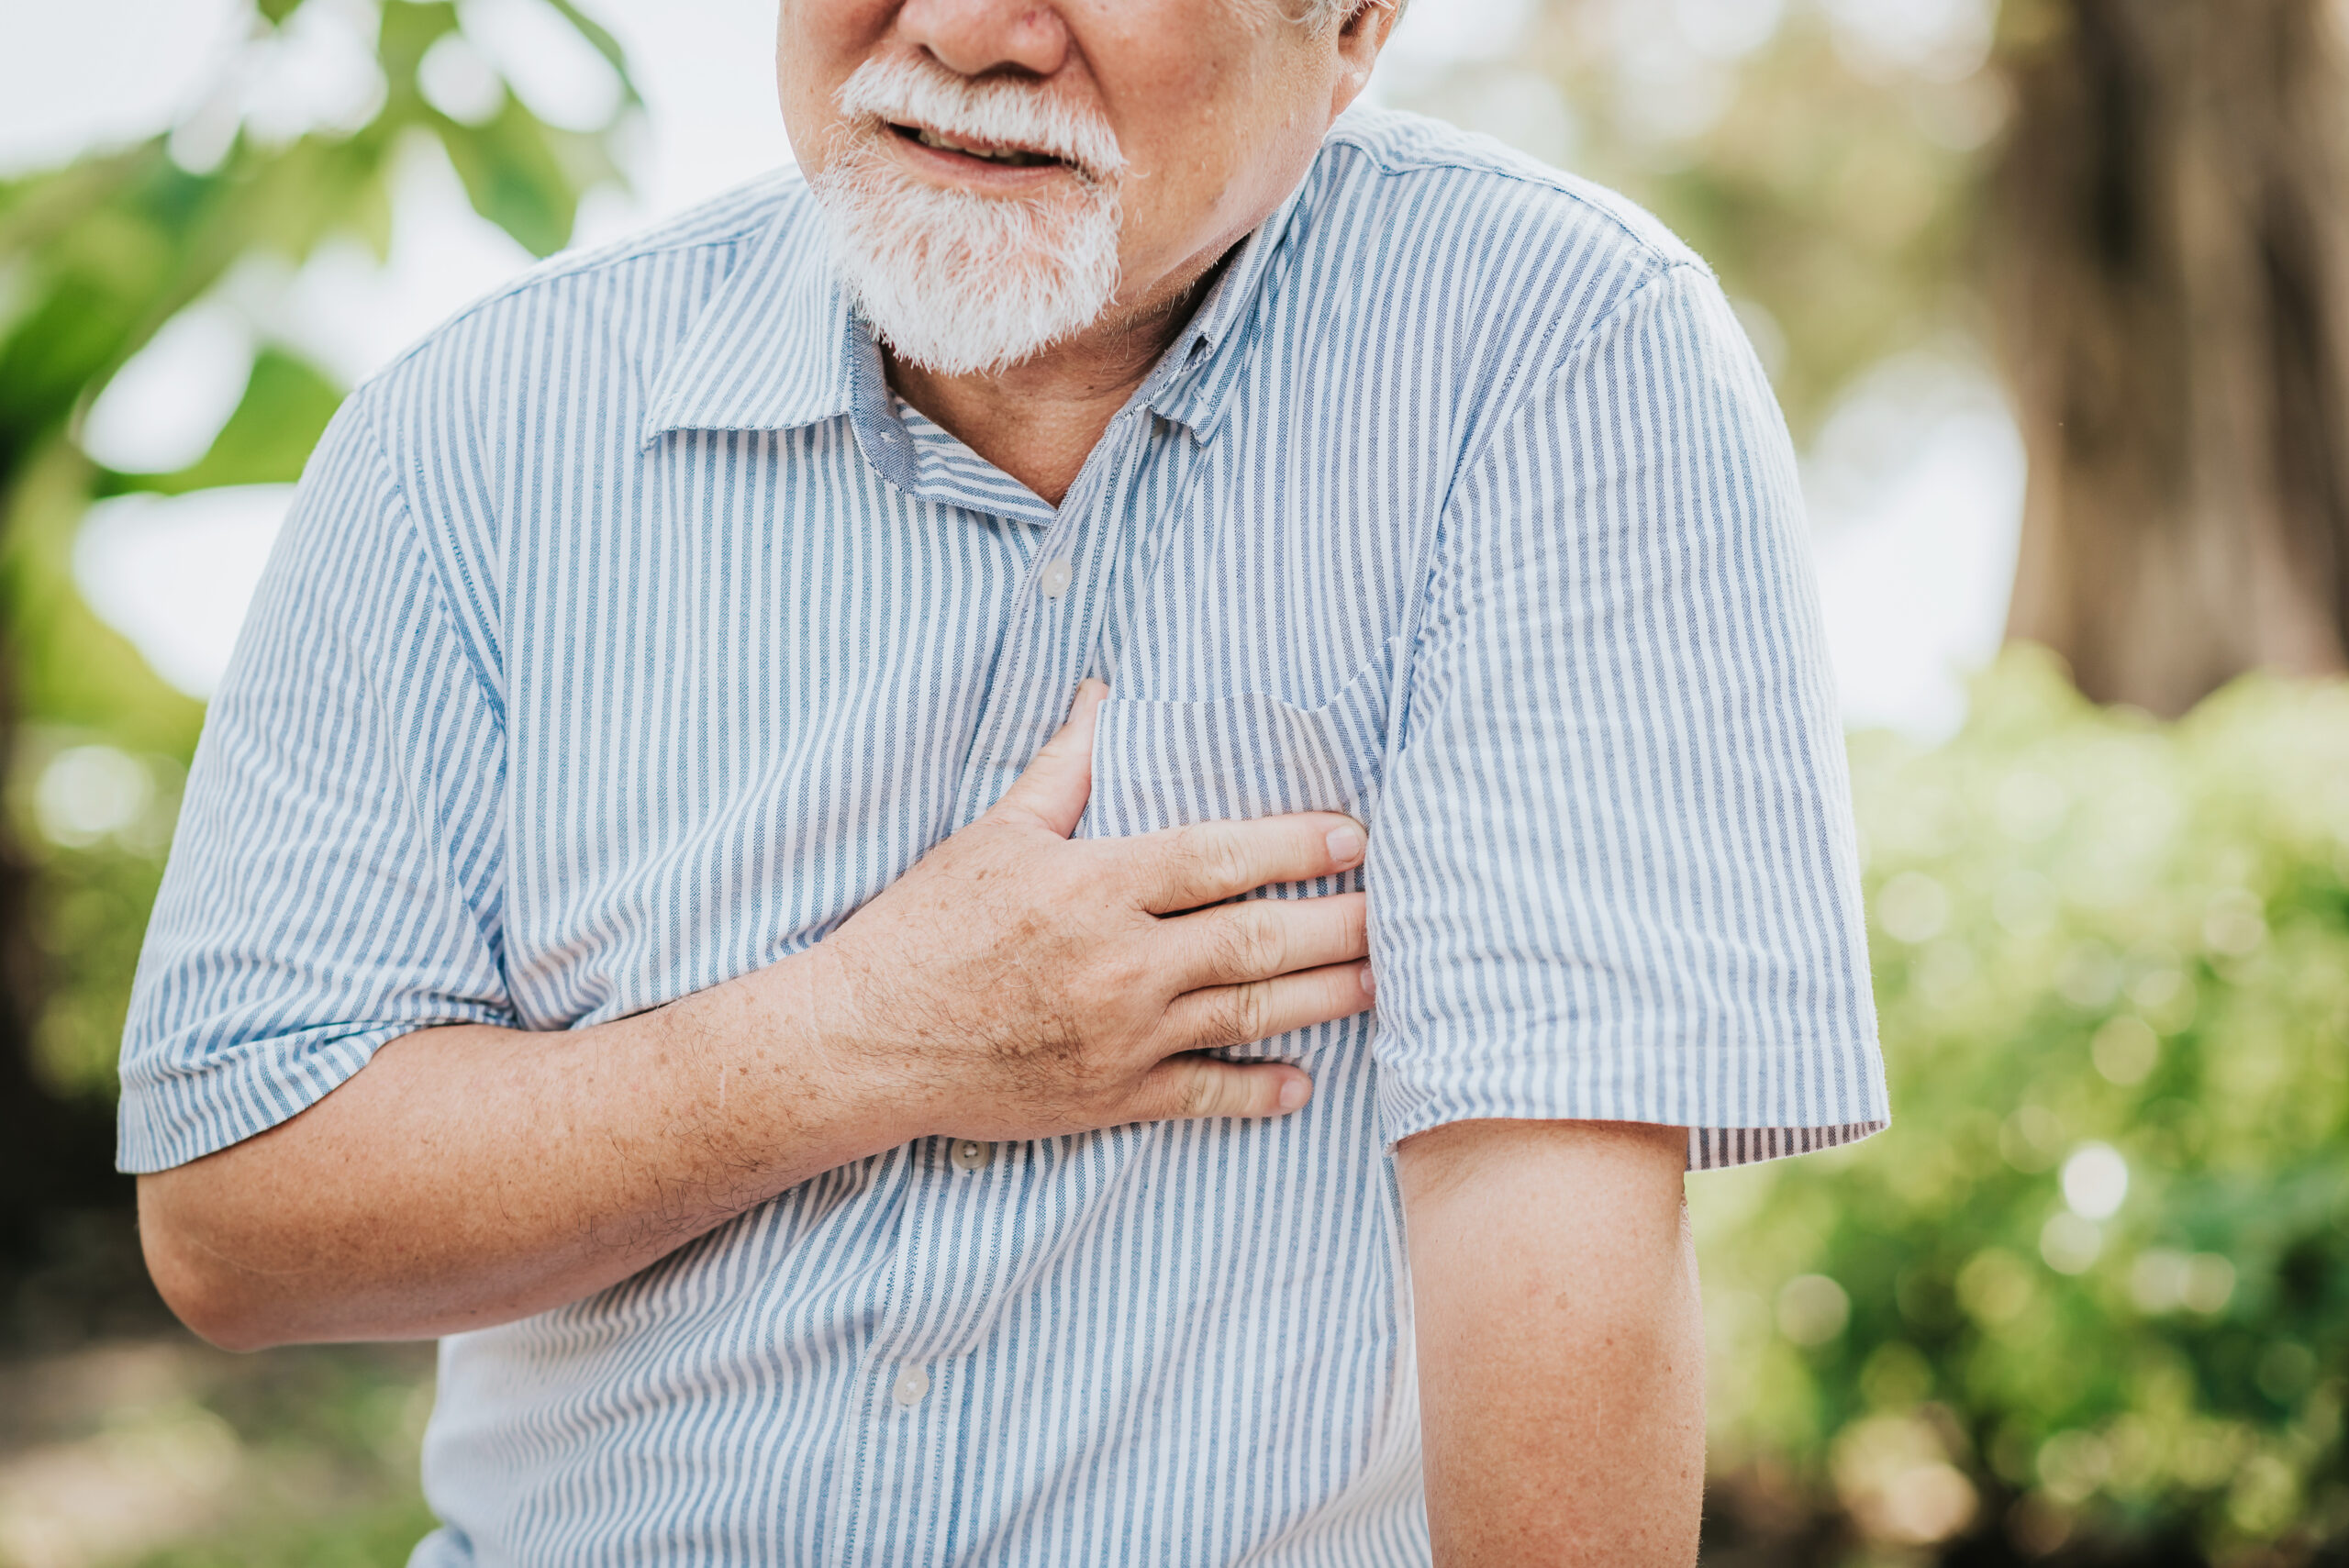 Odma płucna – zagrażająca życiu konsekwencja urazu klatki piersiowej